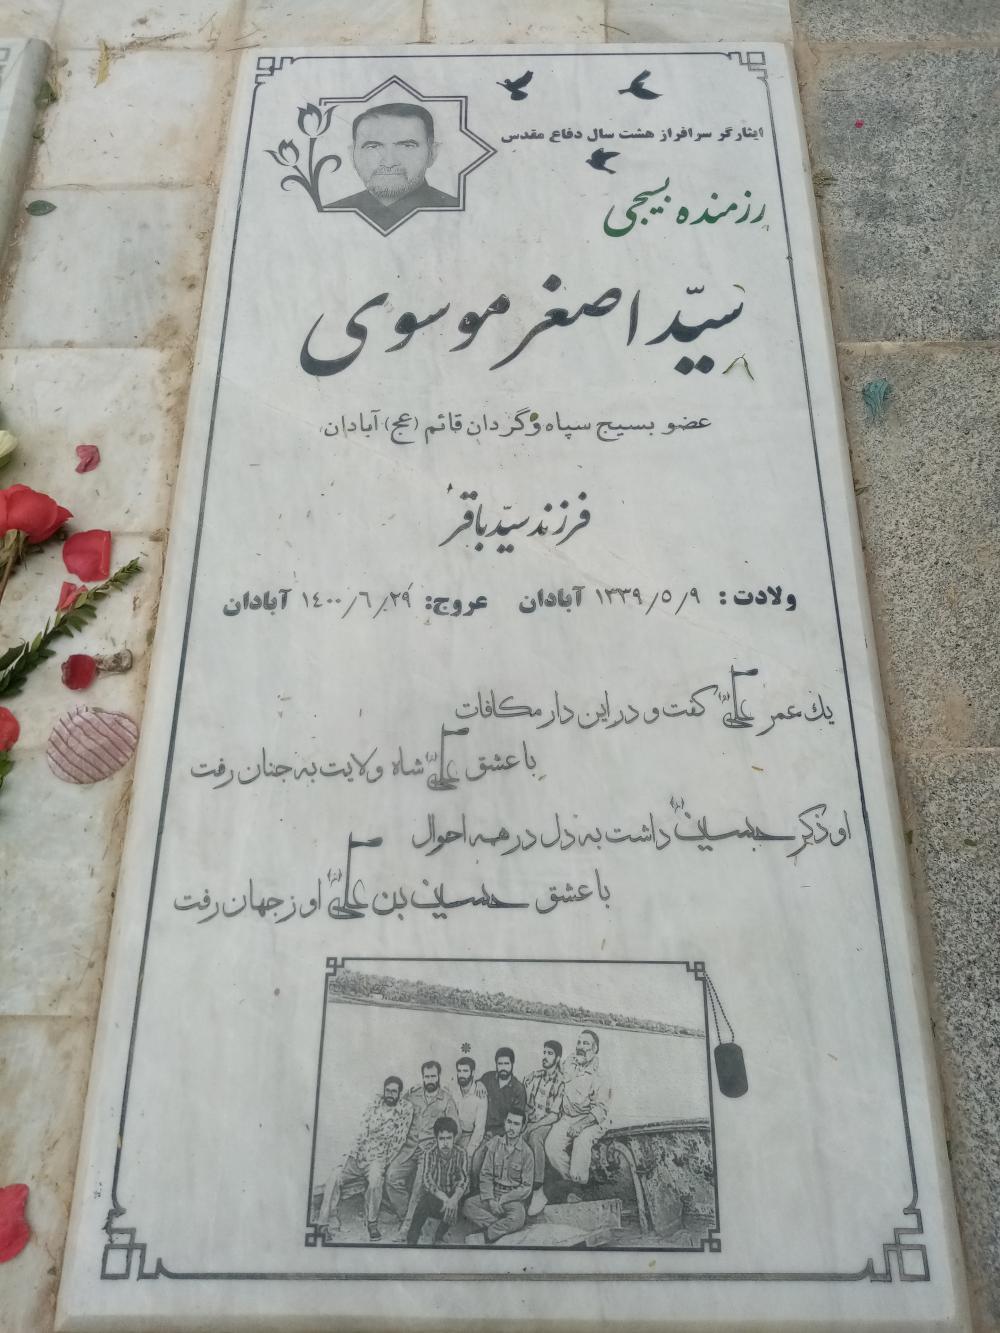 یادبود شادروان ایثارگر سرافراز 8 سال دفاع مقدس عضو بسیج و سپاه گردان حضرت قائم (عج) سید اصغر موسوی